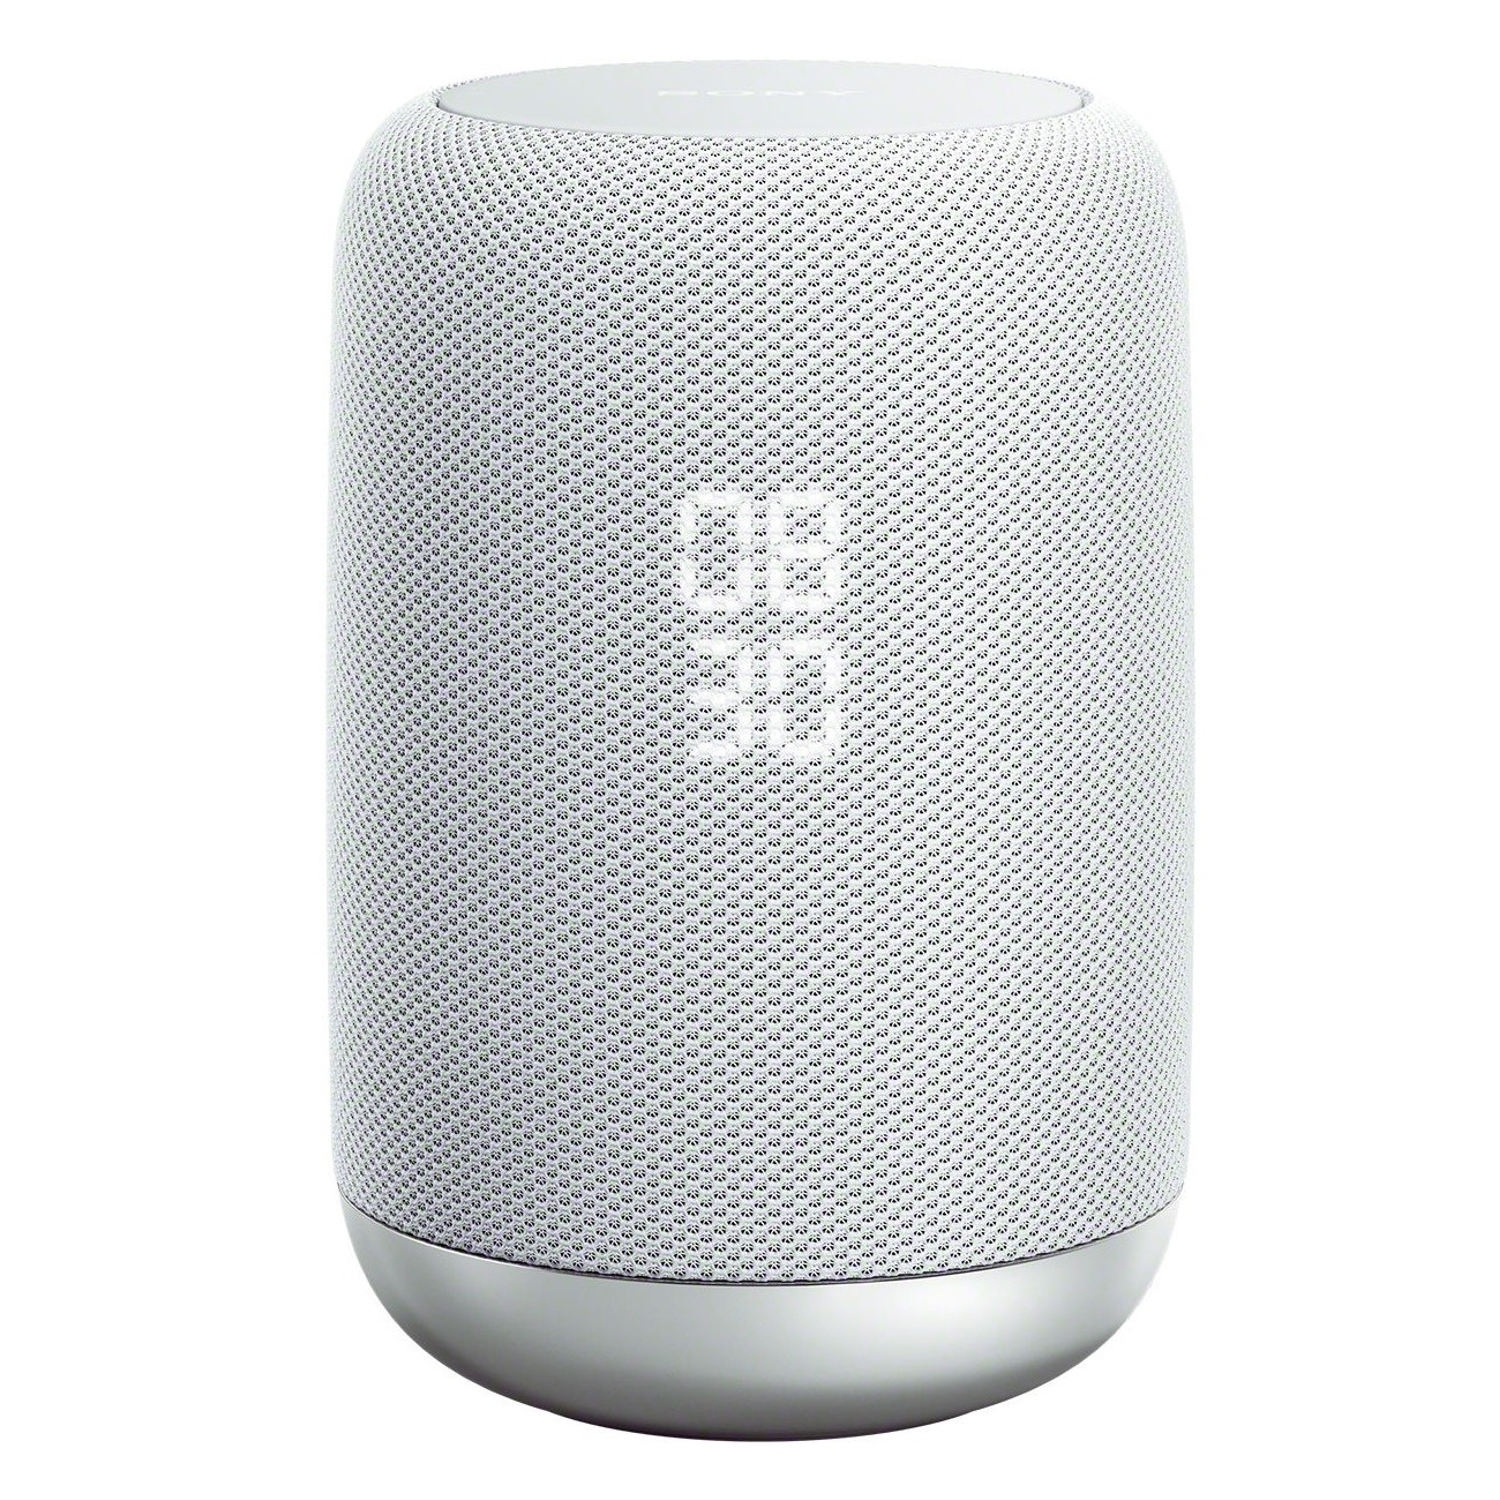 Sony Speaker White Wireless Smart Speaker Google Assistant - WiFi - 0